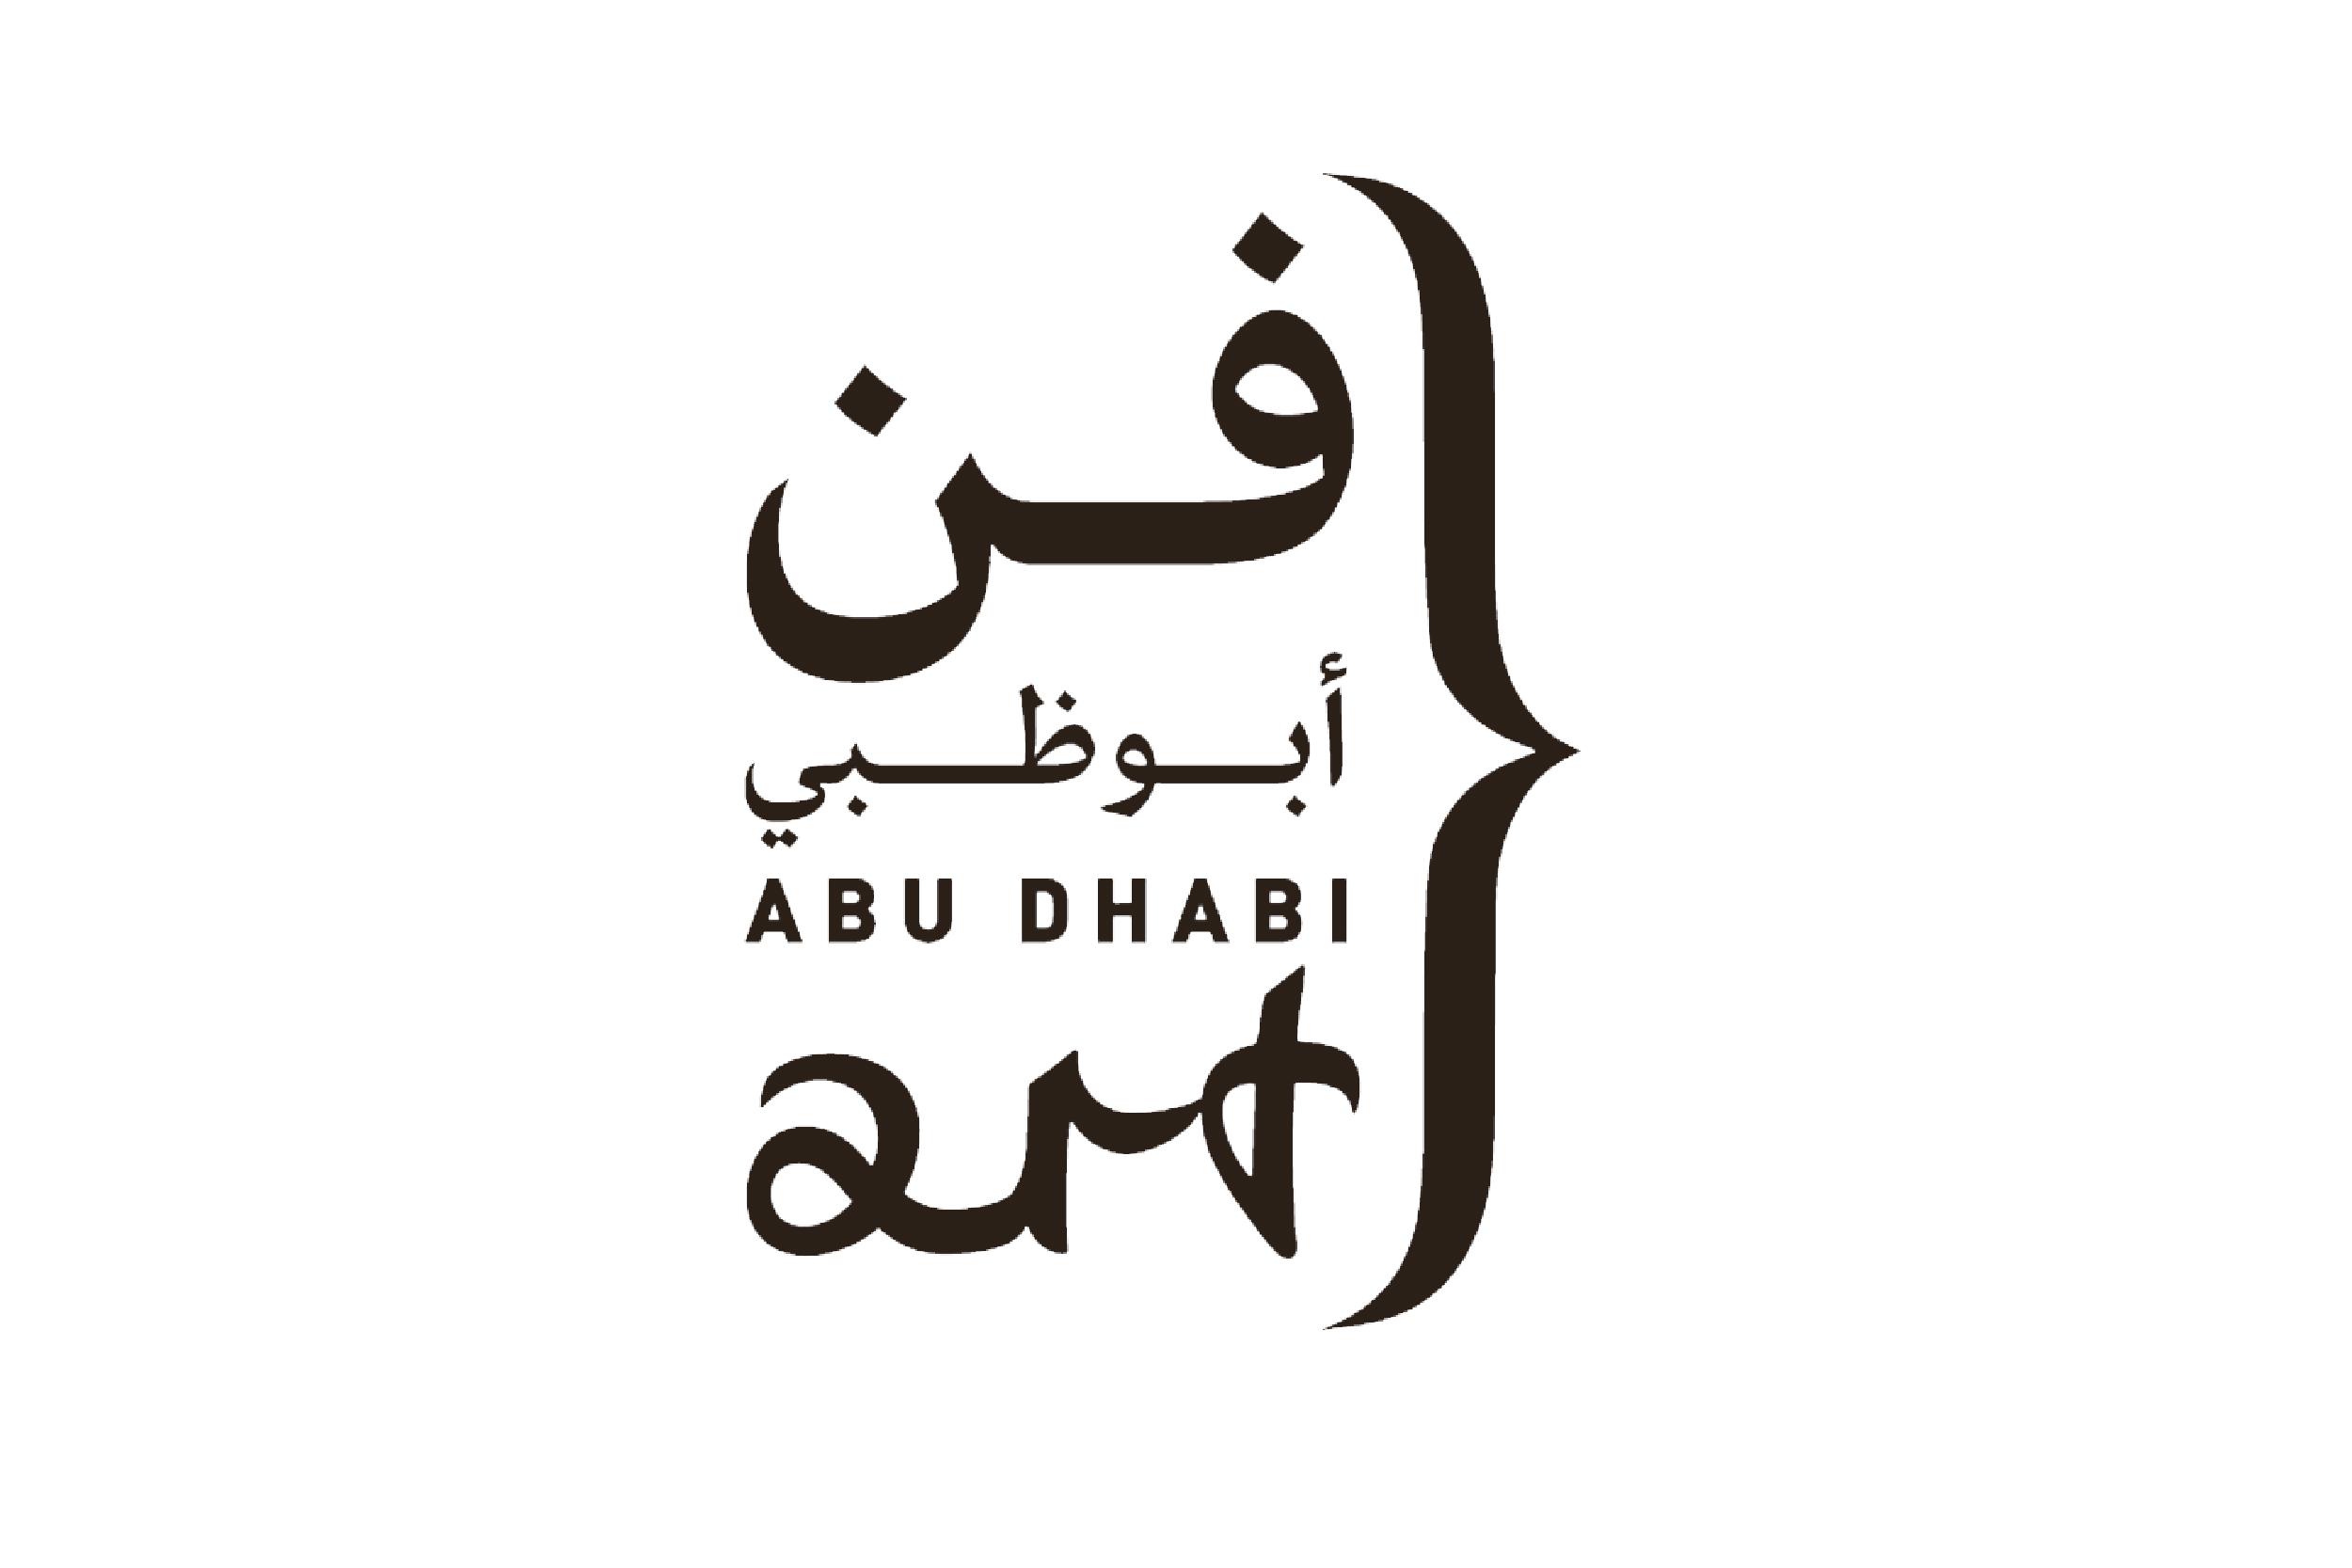 ABU DHABI ART 2021